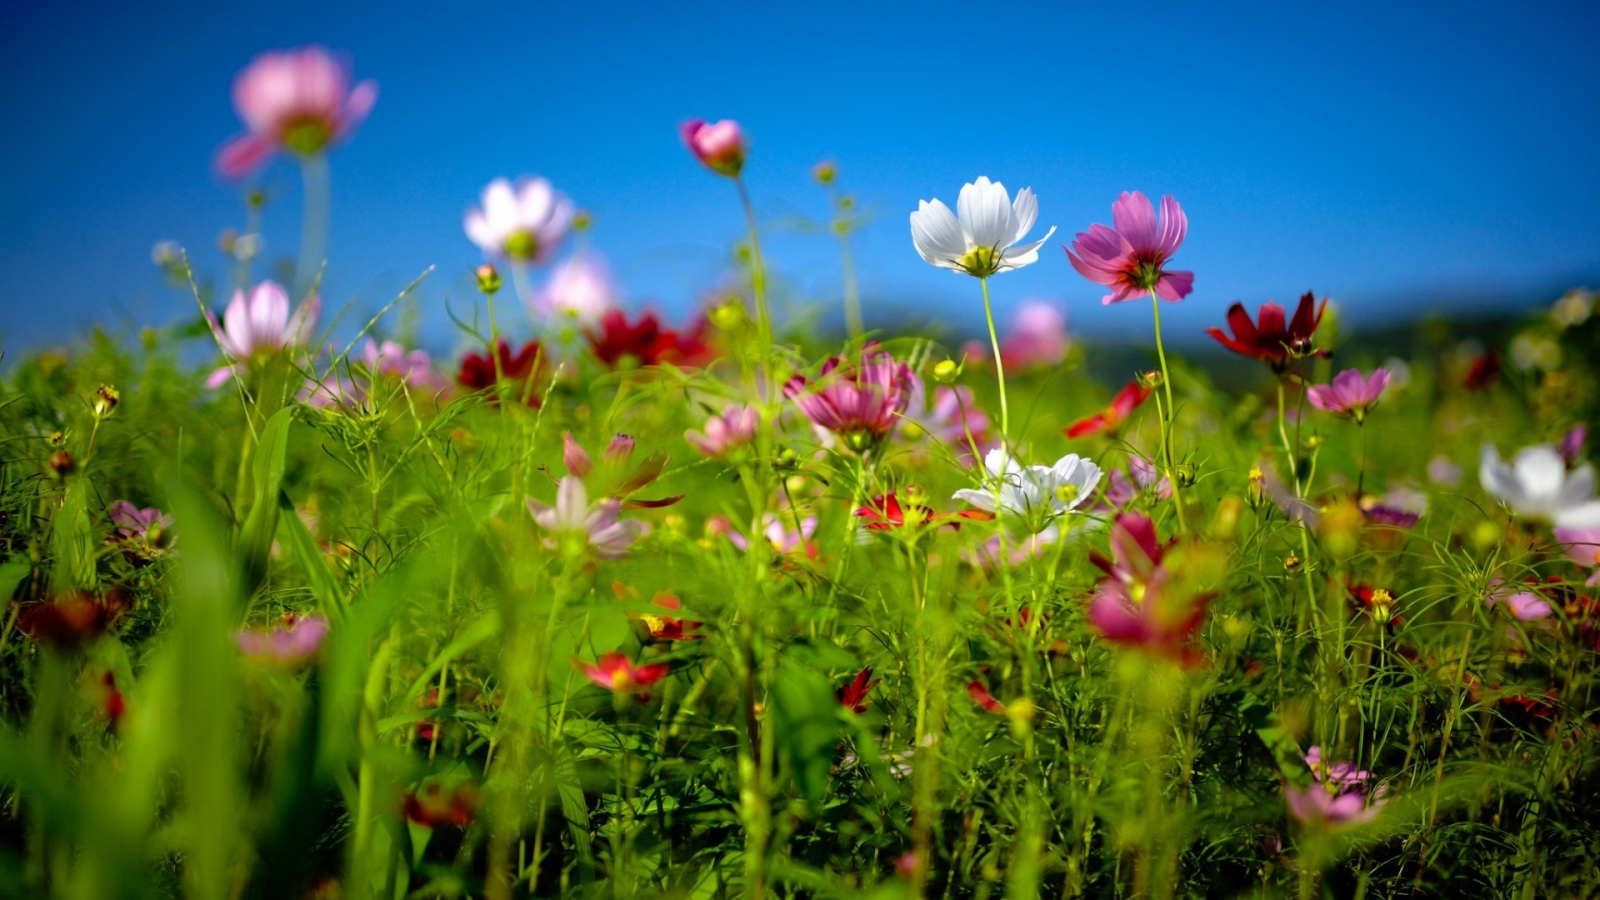 Spring Flower Land for 1600 x 900 HDTV resolution